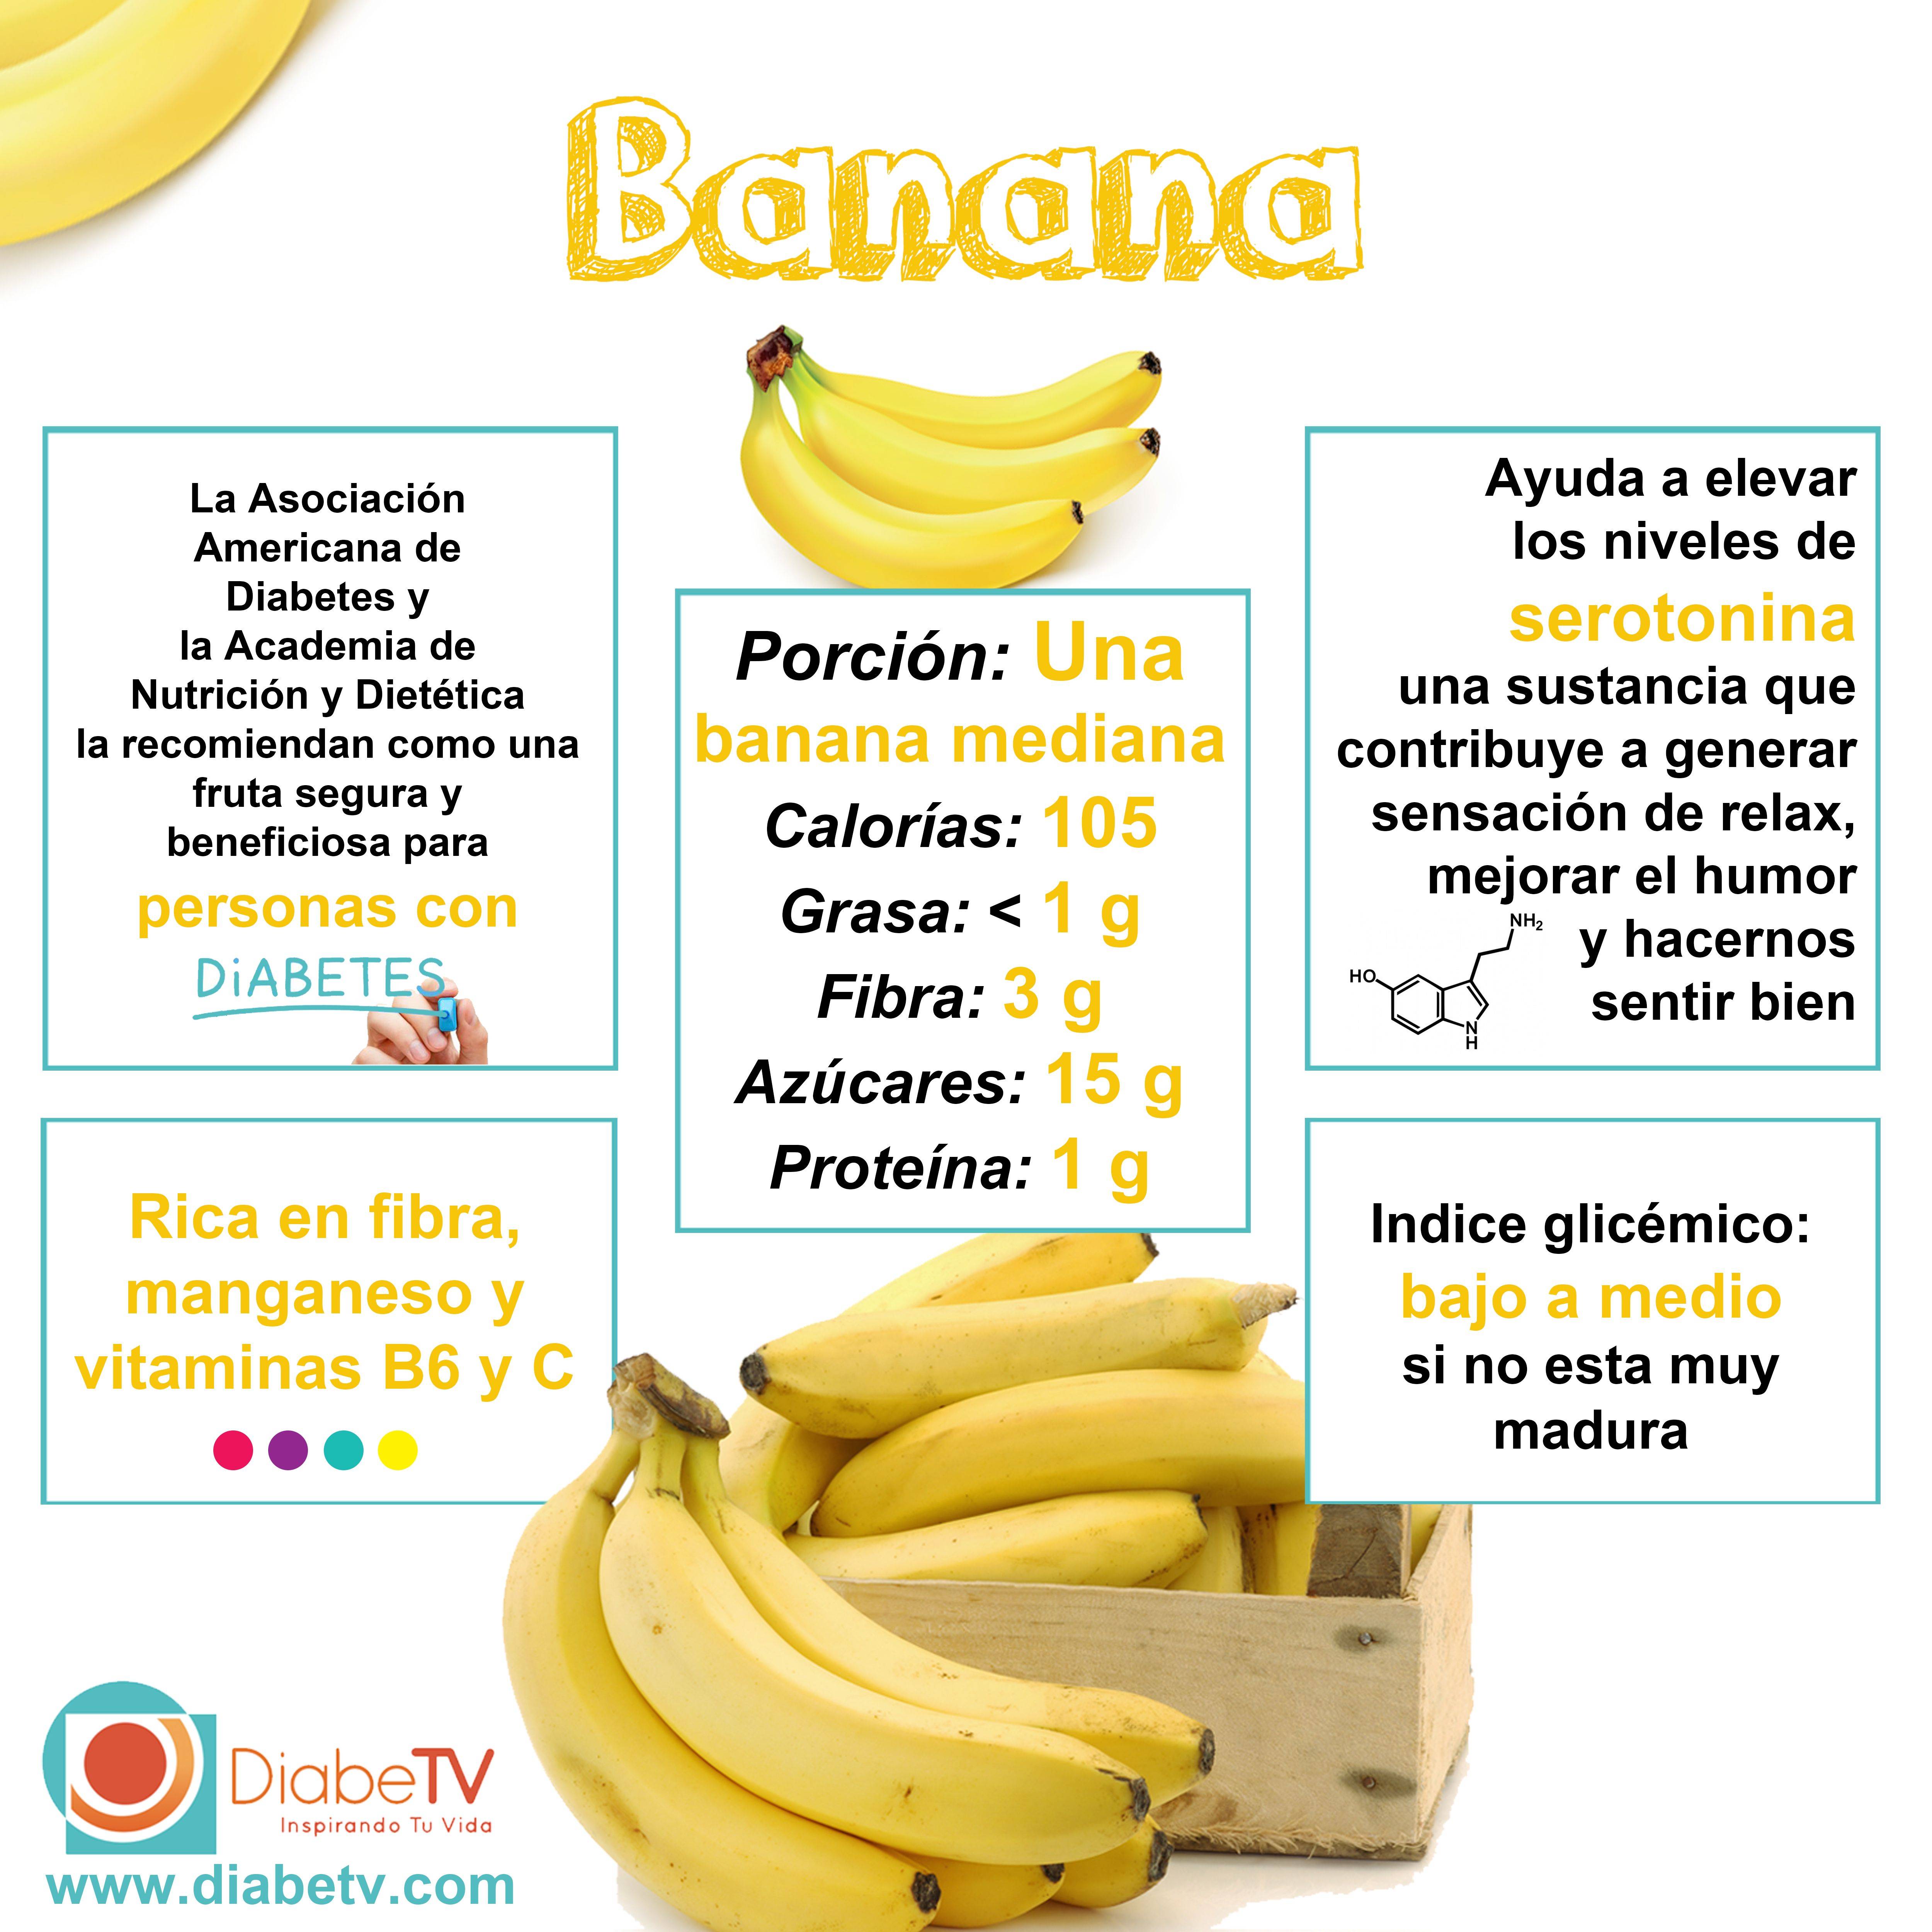 Бананы при похудении: польза и вред, секреты употребления, рецепты